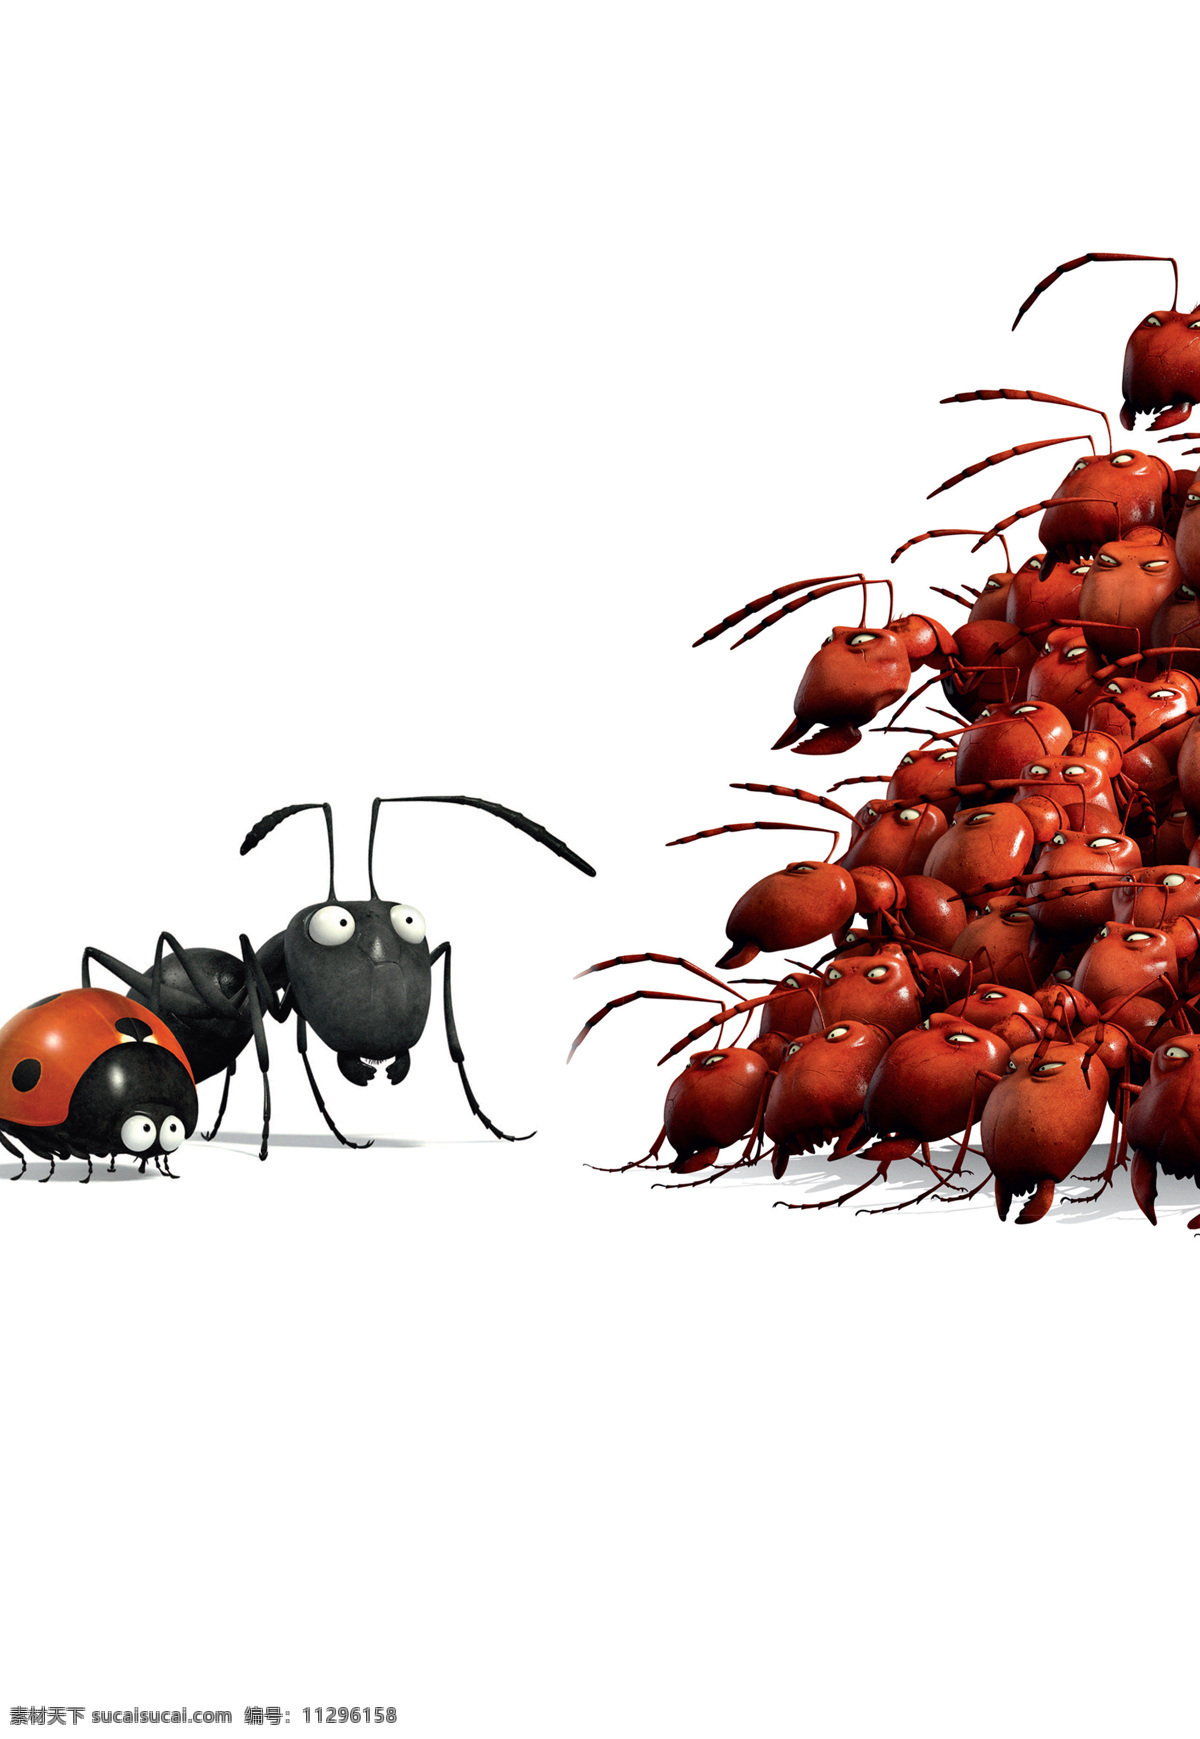 昆虫总动员 虫虫大联盟 红蚁 黑蚂蚁 瓢虫 杀虫剂 方糖争霸战 密林 动画 动画电影 动画电影素材 动漫动画